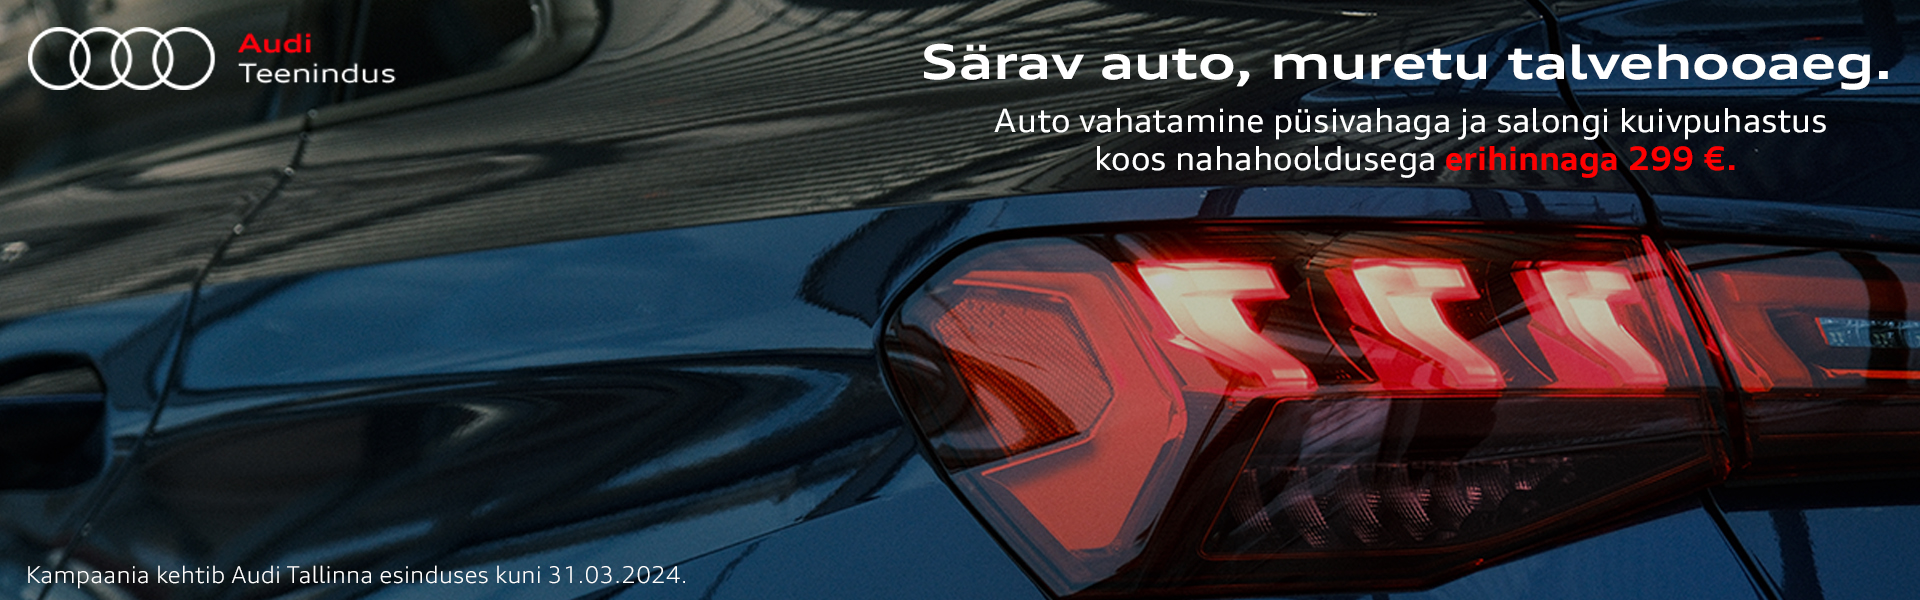 Pesula kampaania Audi veeb.jpg